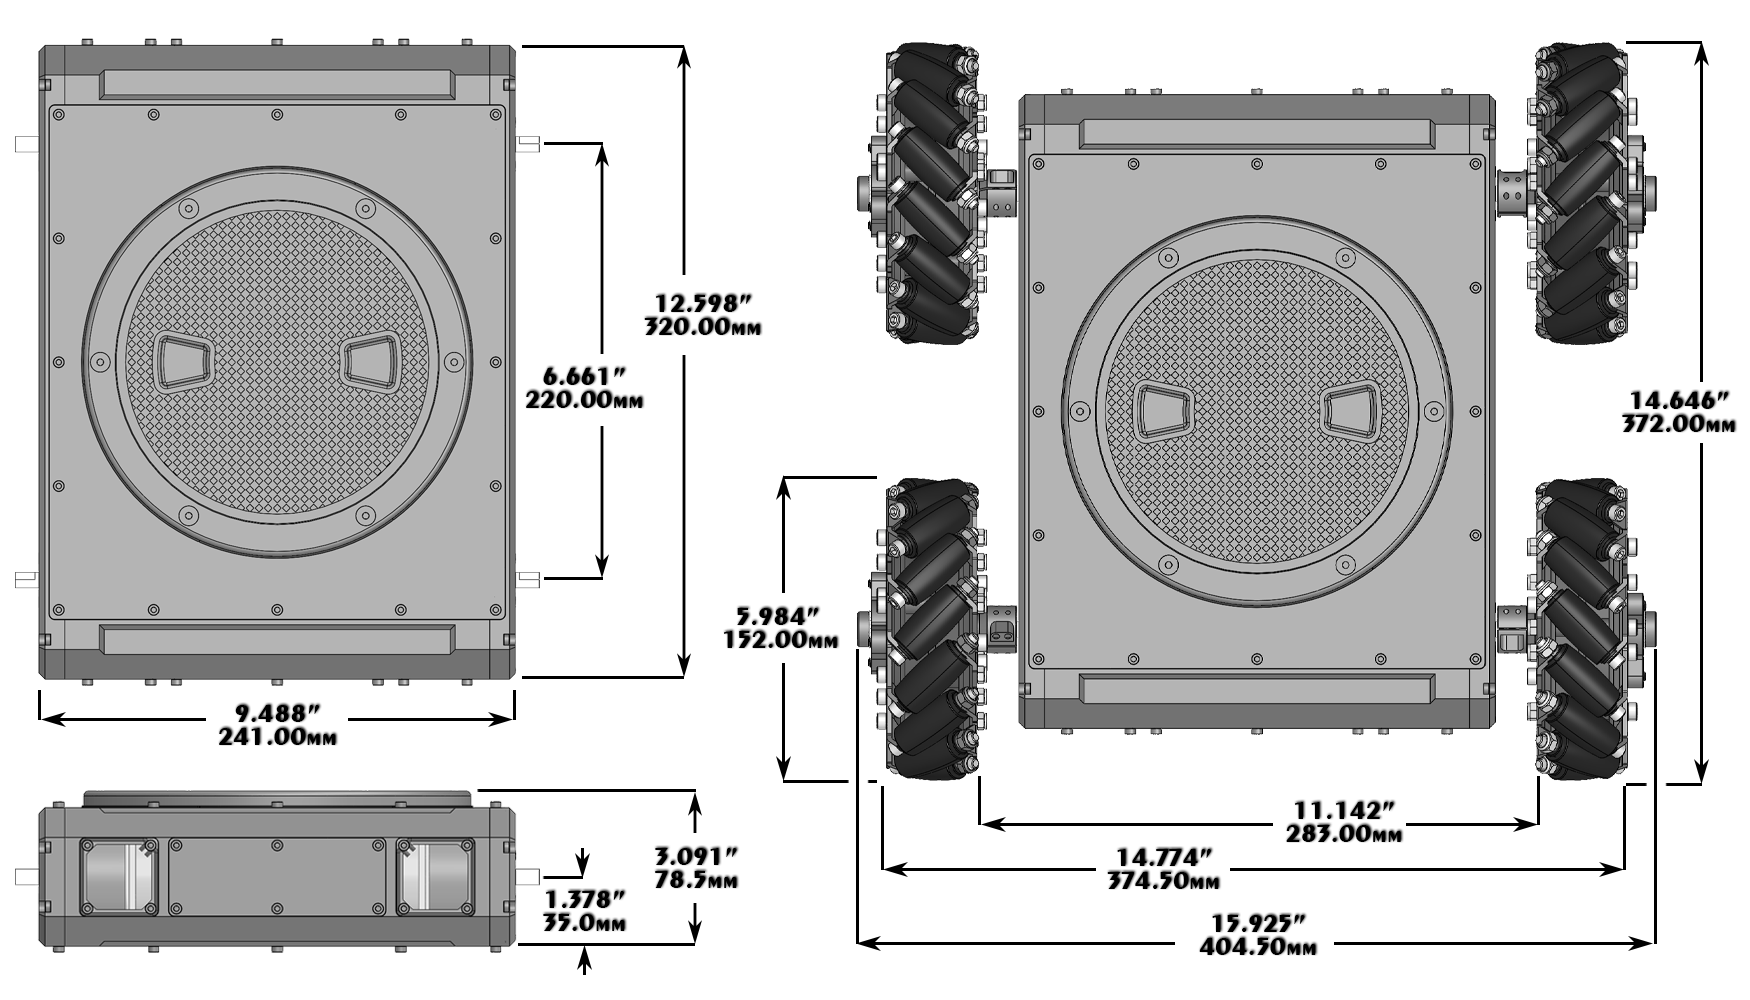 Kit de Rover Mecanum Robusto Autónomo A4WD3 Lynxmotion - Dimensiones